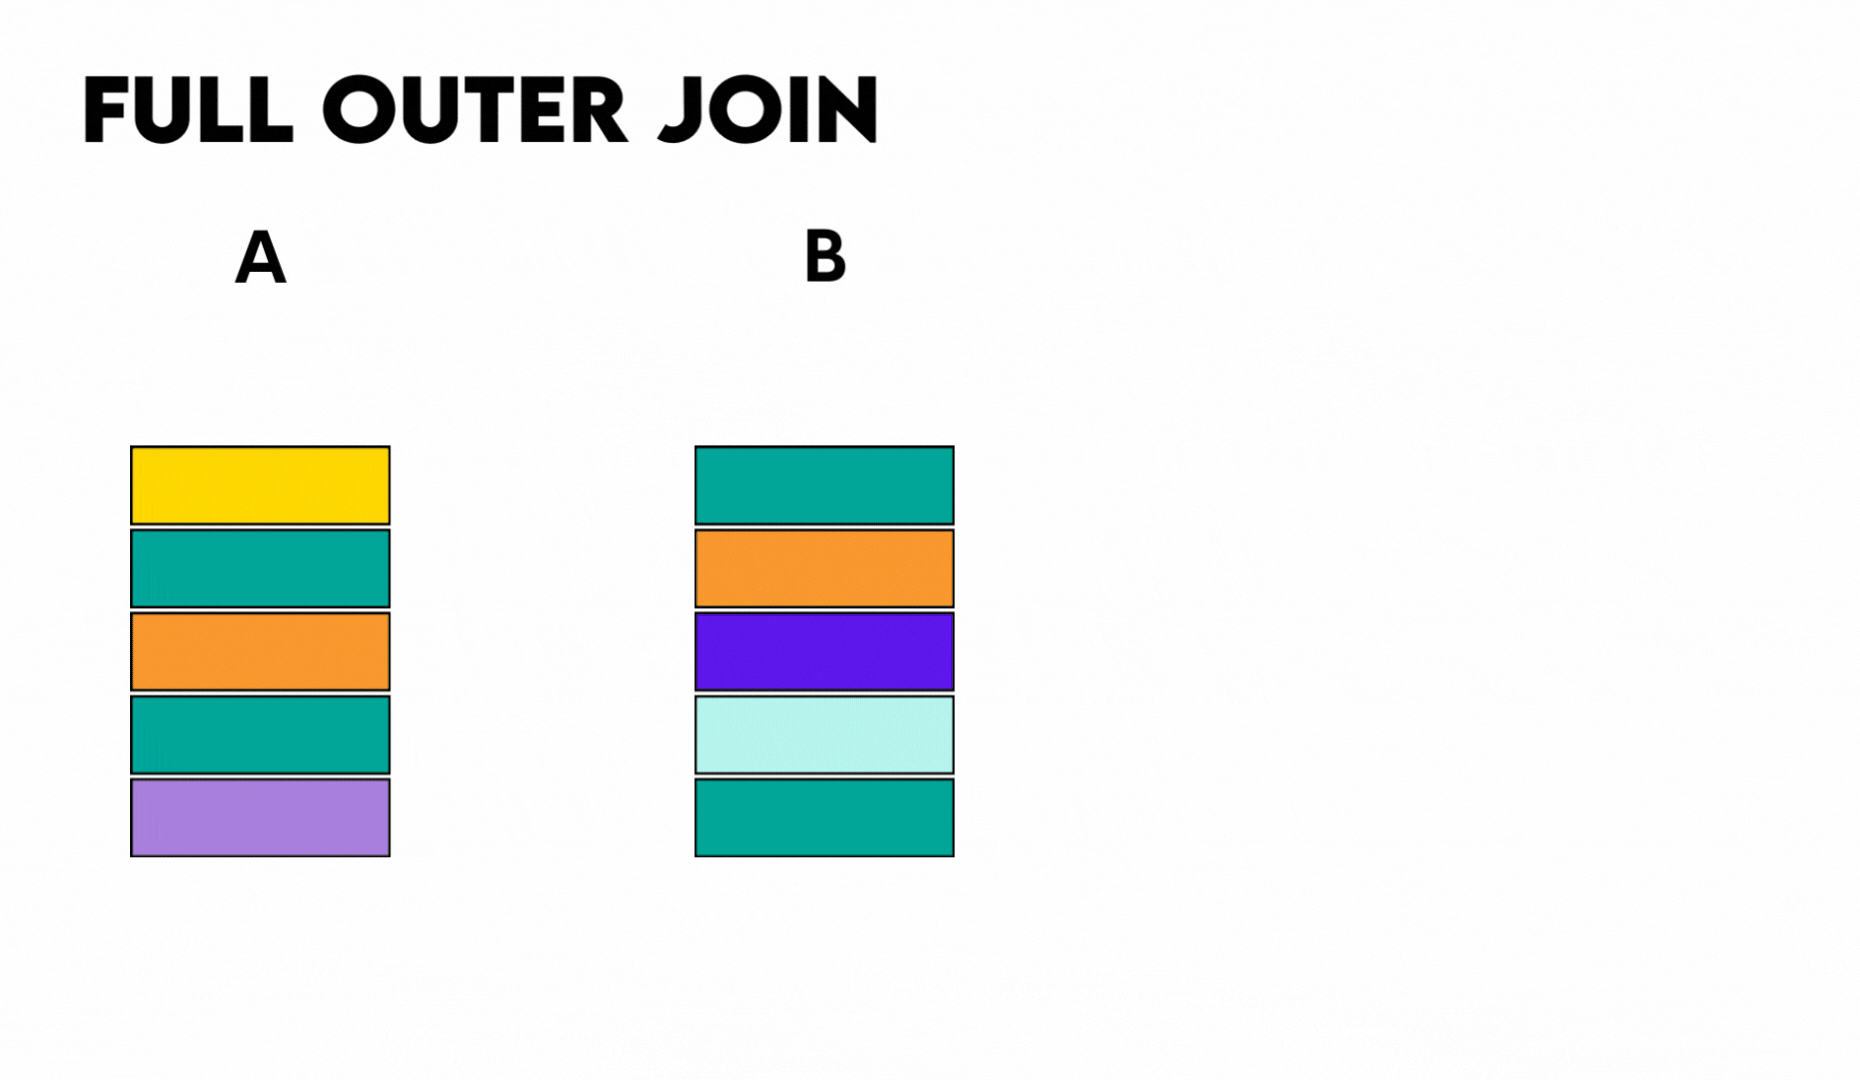 Full outer join vs inner join